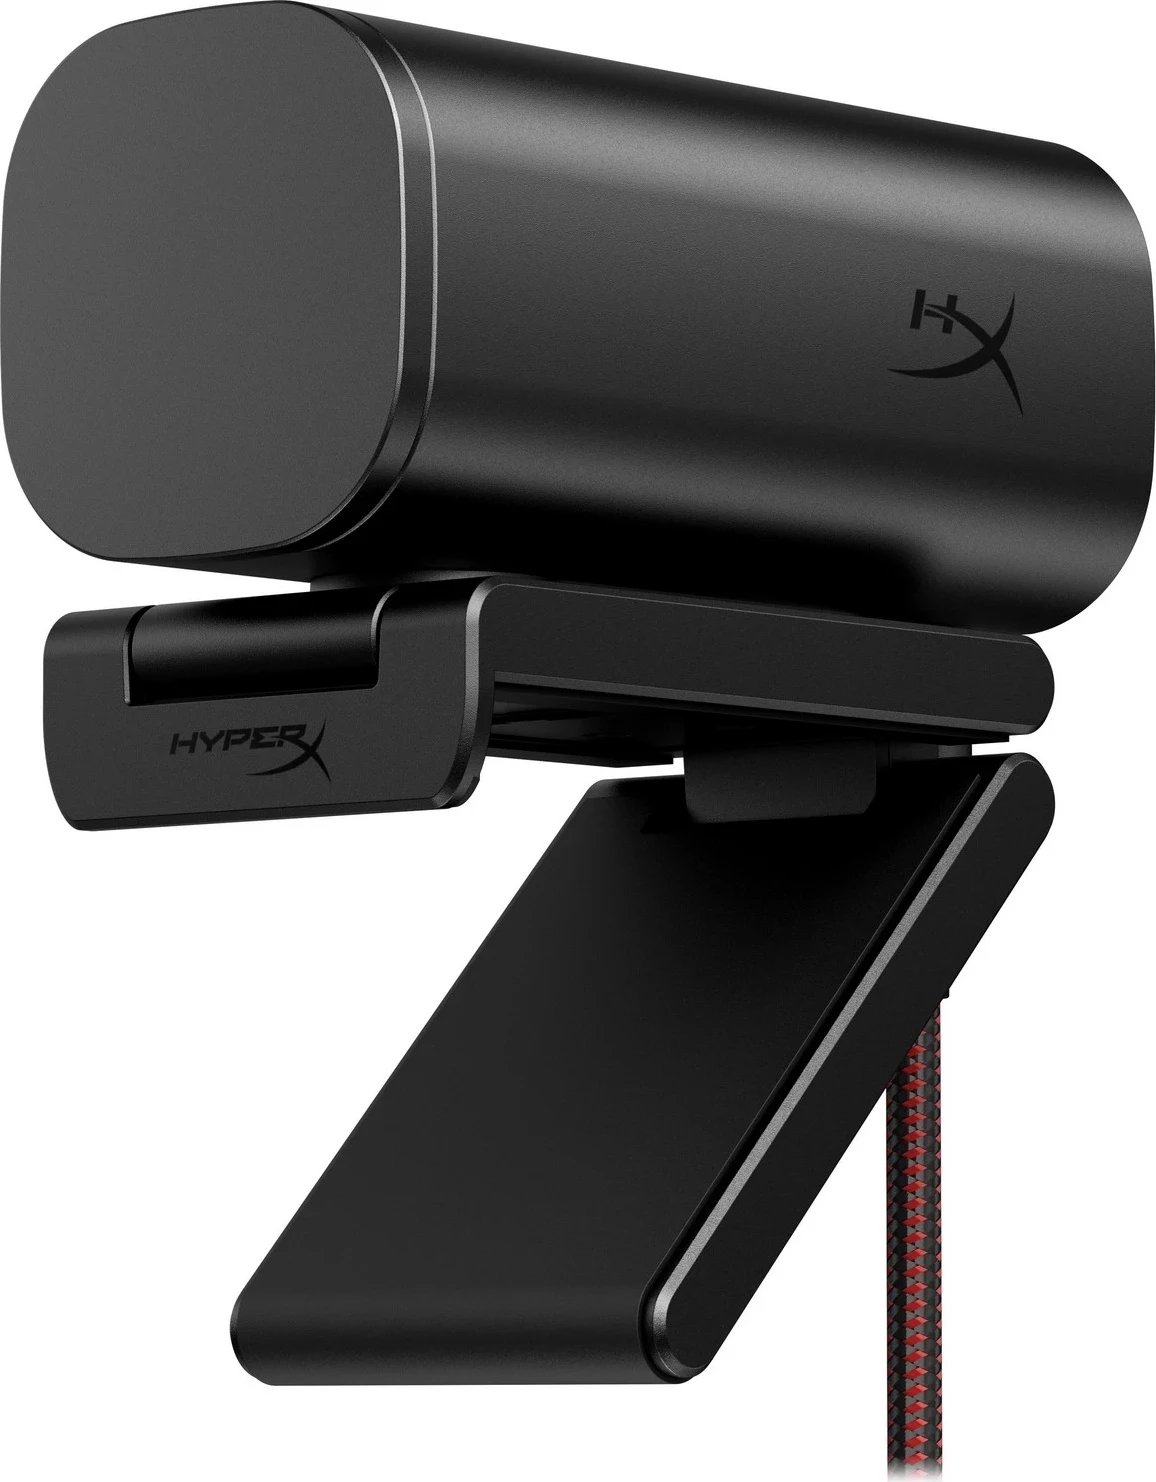 Webcam për lojëra HyperX Vision S, e zezë